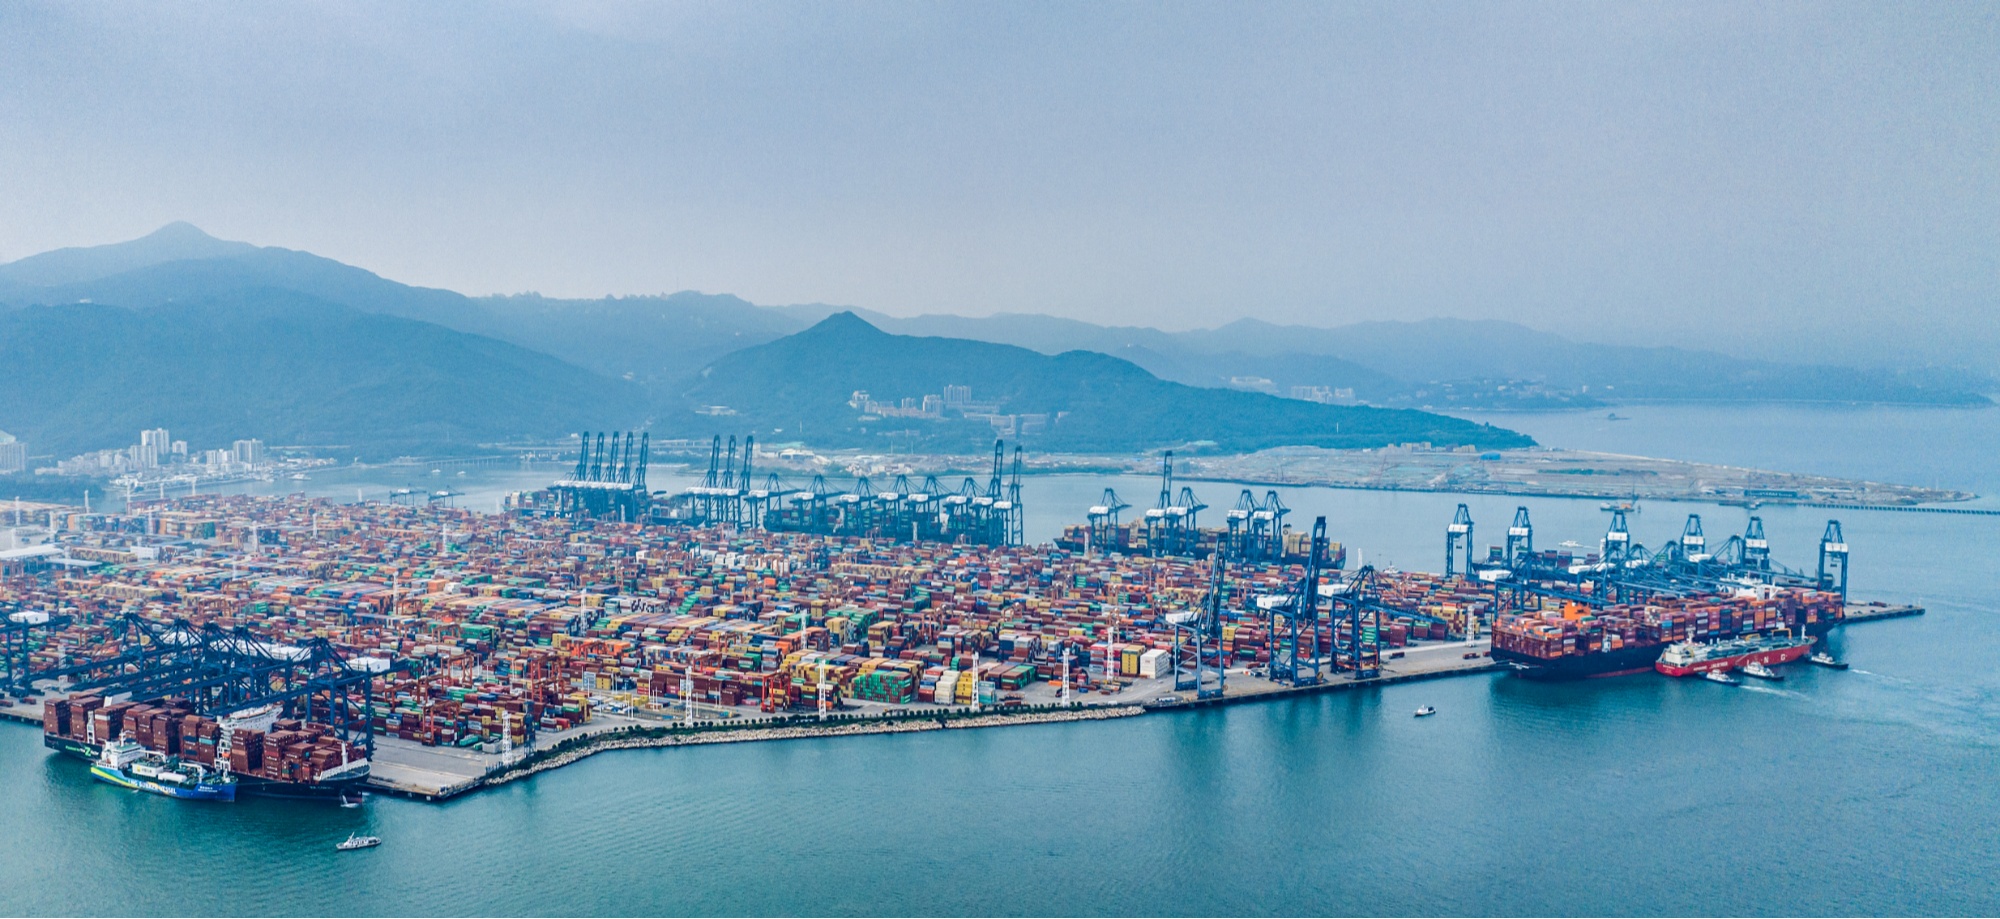 深圳盐田港同时为两艘国际航行集装箱船舶加注液化天然气燃料